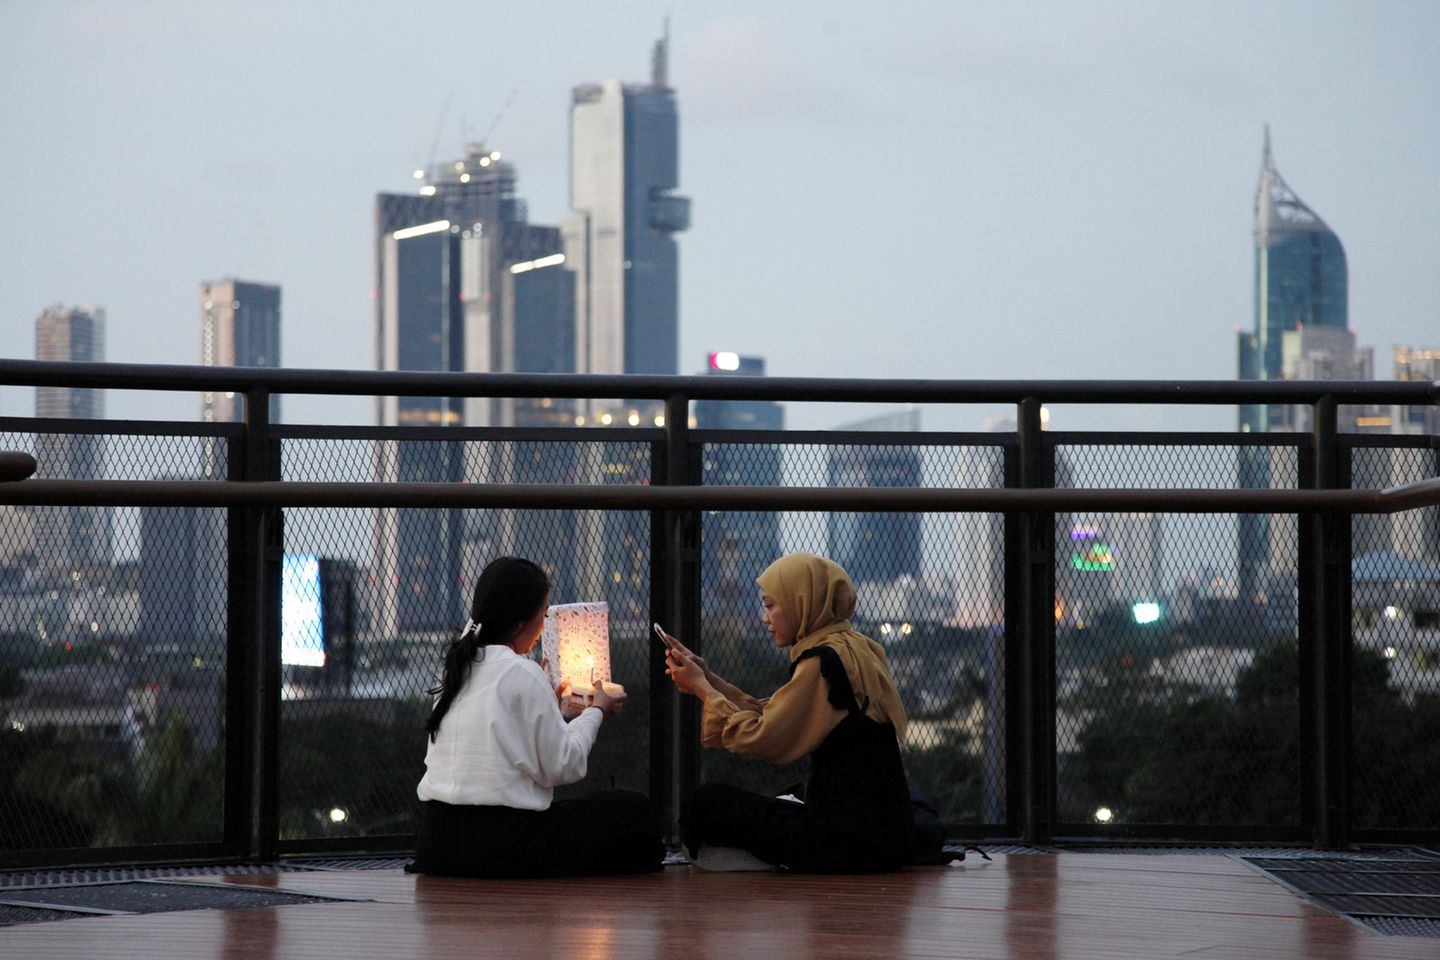 Indonesien gehört zum Club der Länder mit den meisten Wolkenkratzern